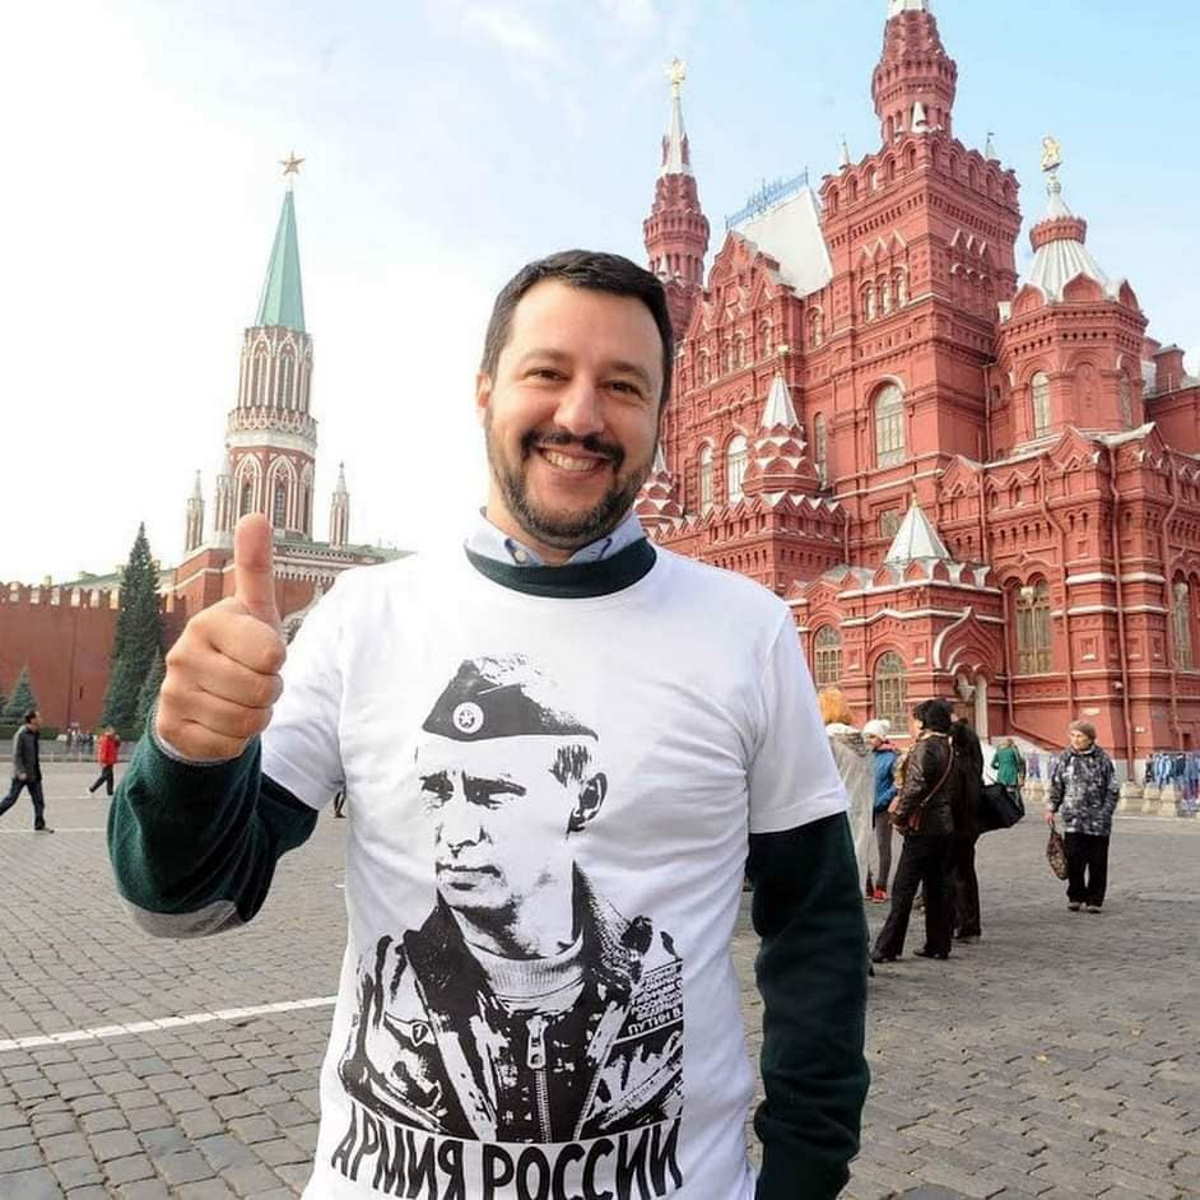 Salvini si commuove per l'Ucraina: la politica social a sprezzo del ridicolo